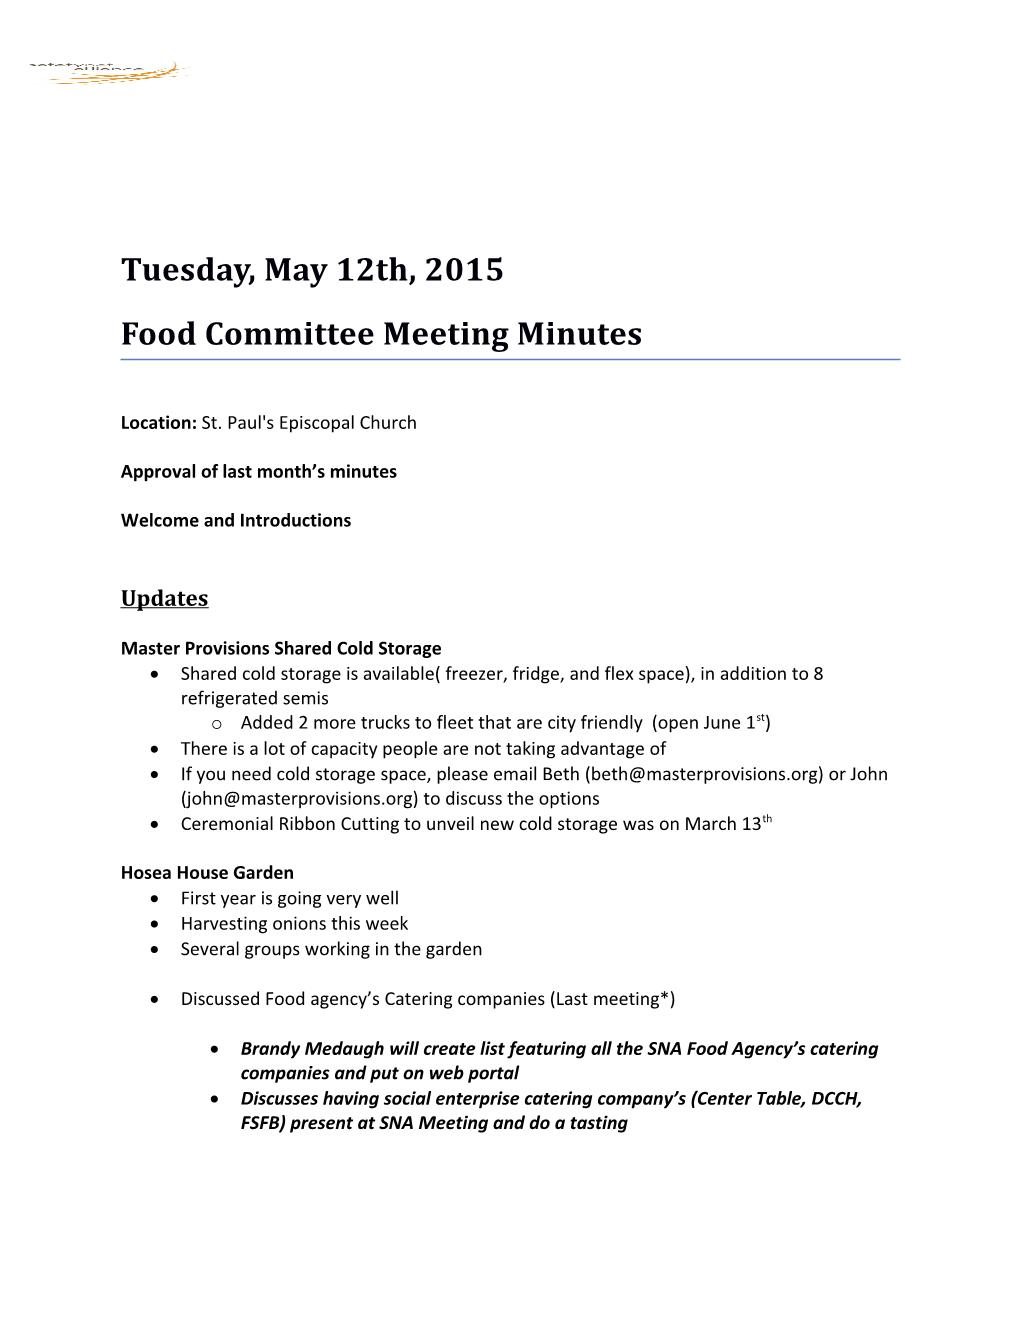 Food Committee Meeting Minutes